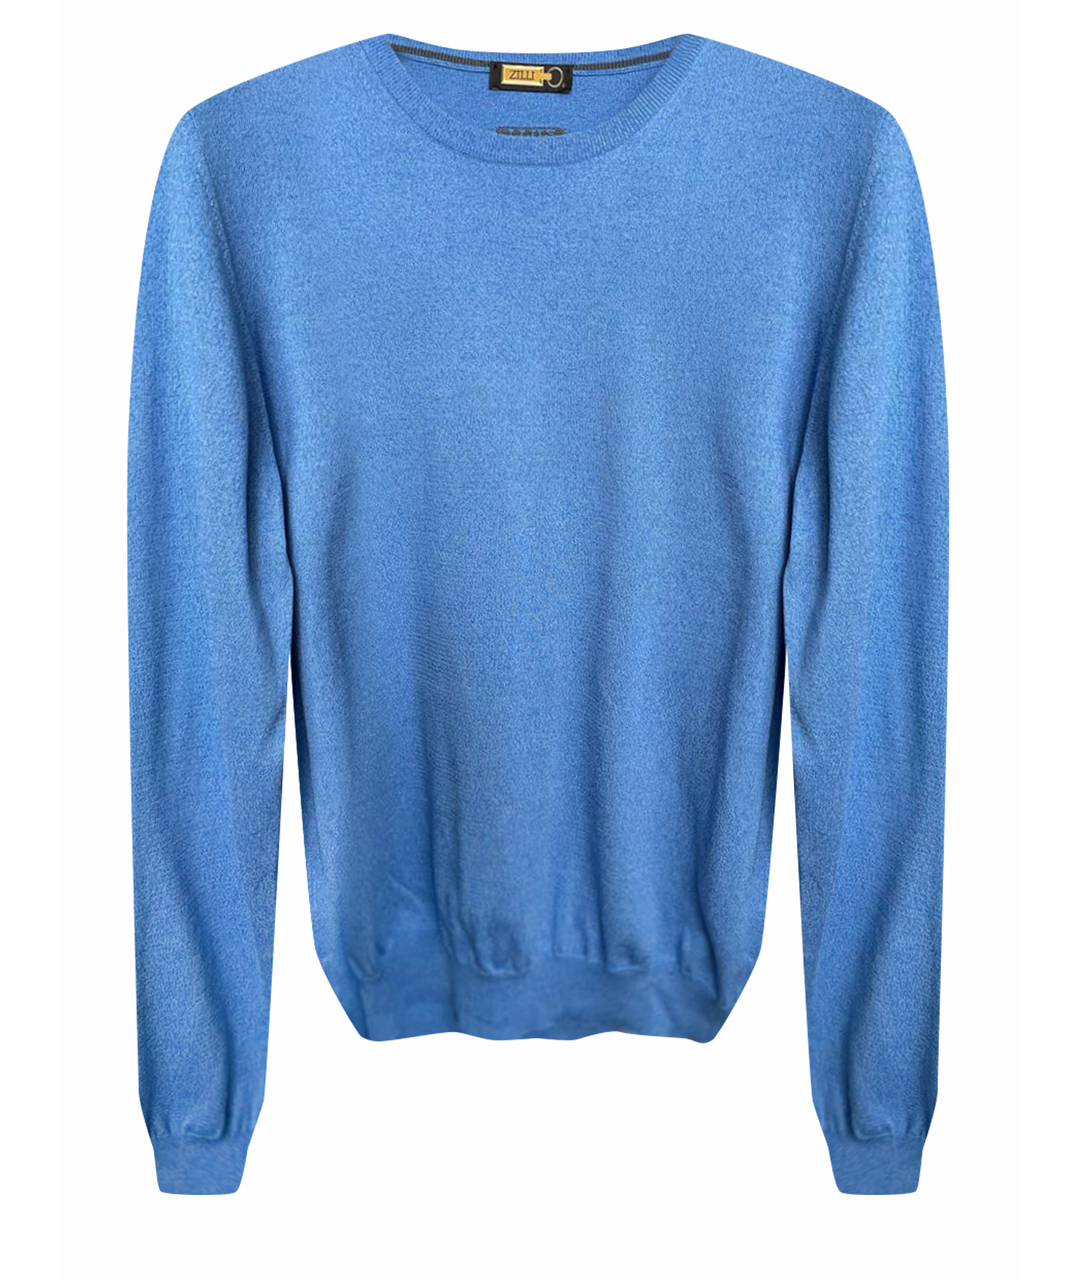 ZILLI Голубой шелковый джемпер / свитер, фото 1